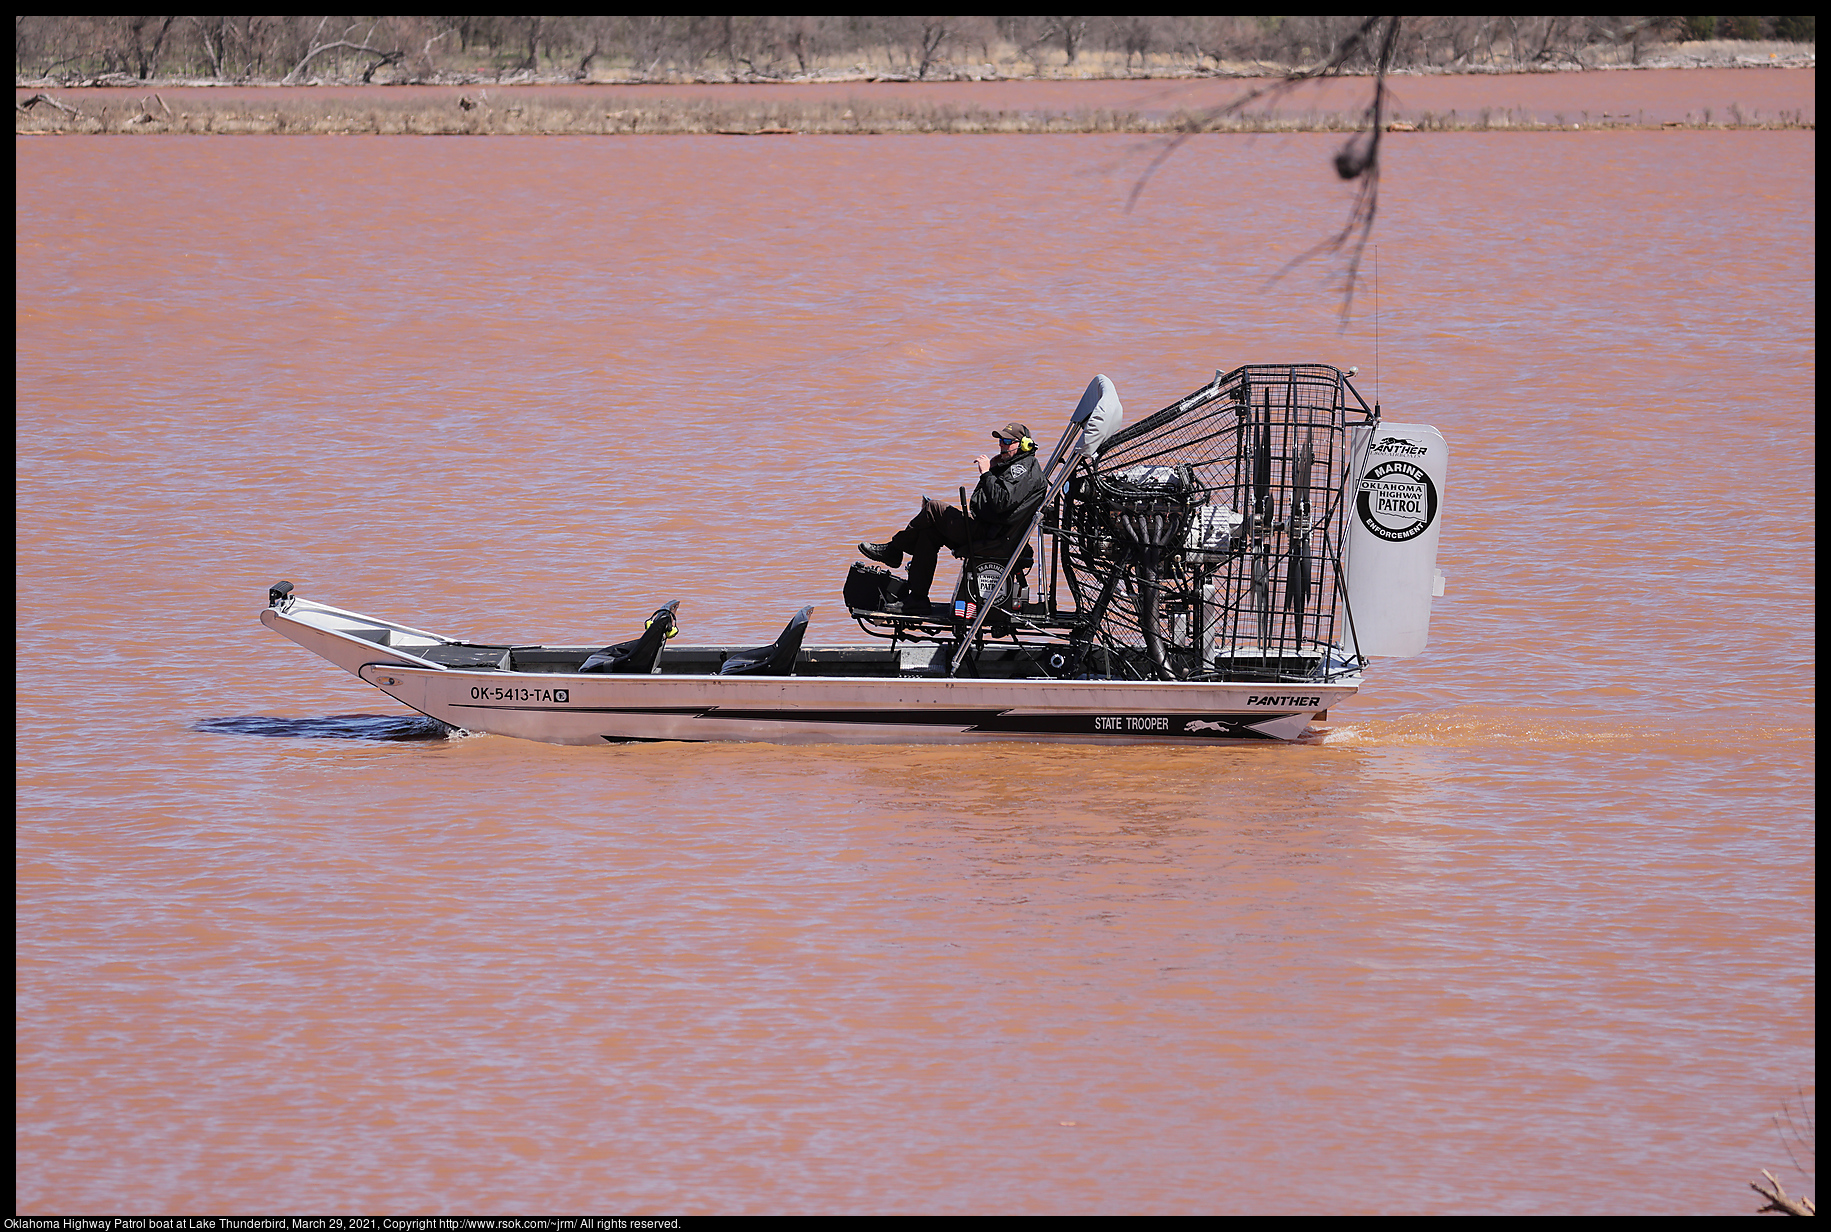 Oklahoma Highway Patrol boat at Lake Thunderbird, March 29, 2021